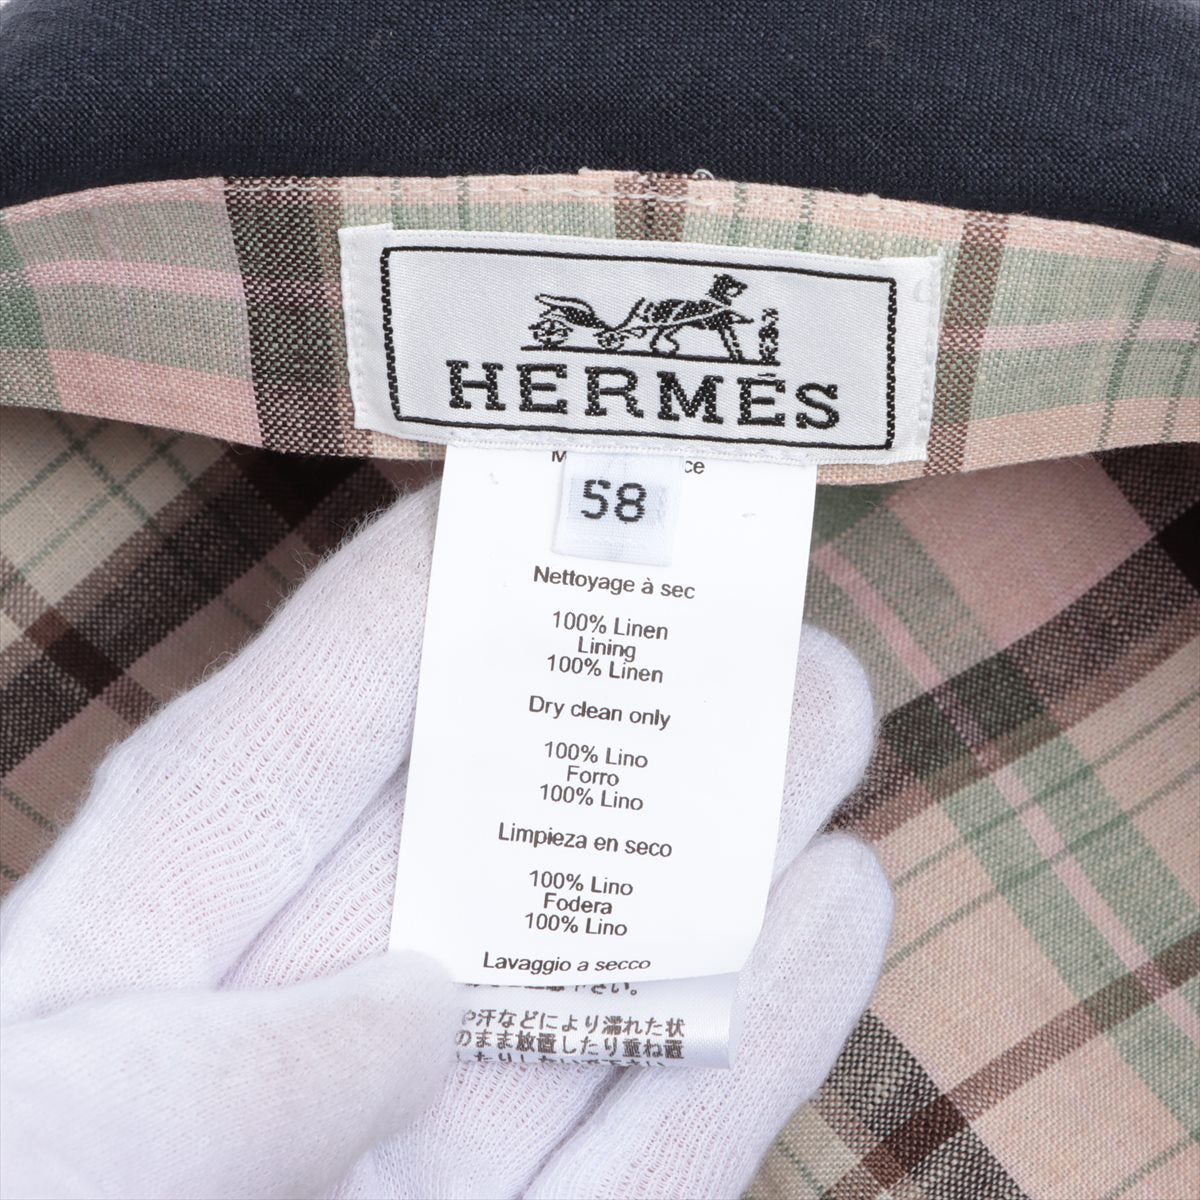 Hermès Newsboy cap 58 Linen Navy blue